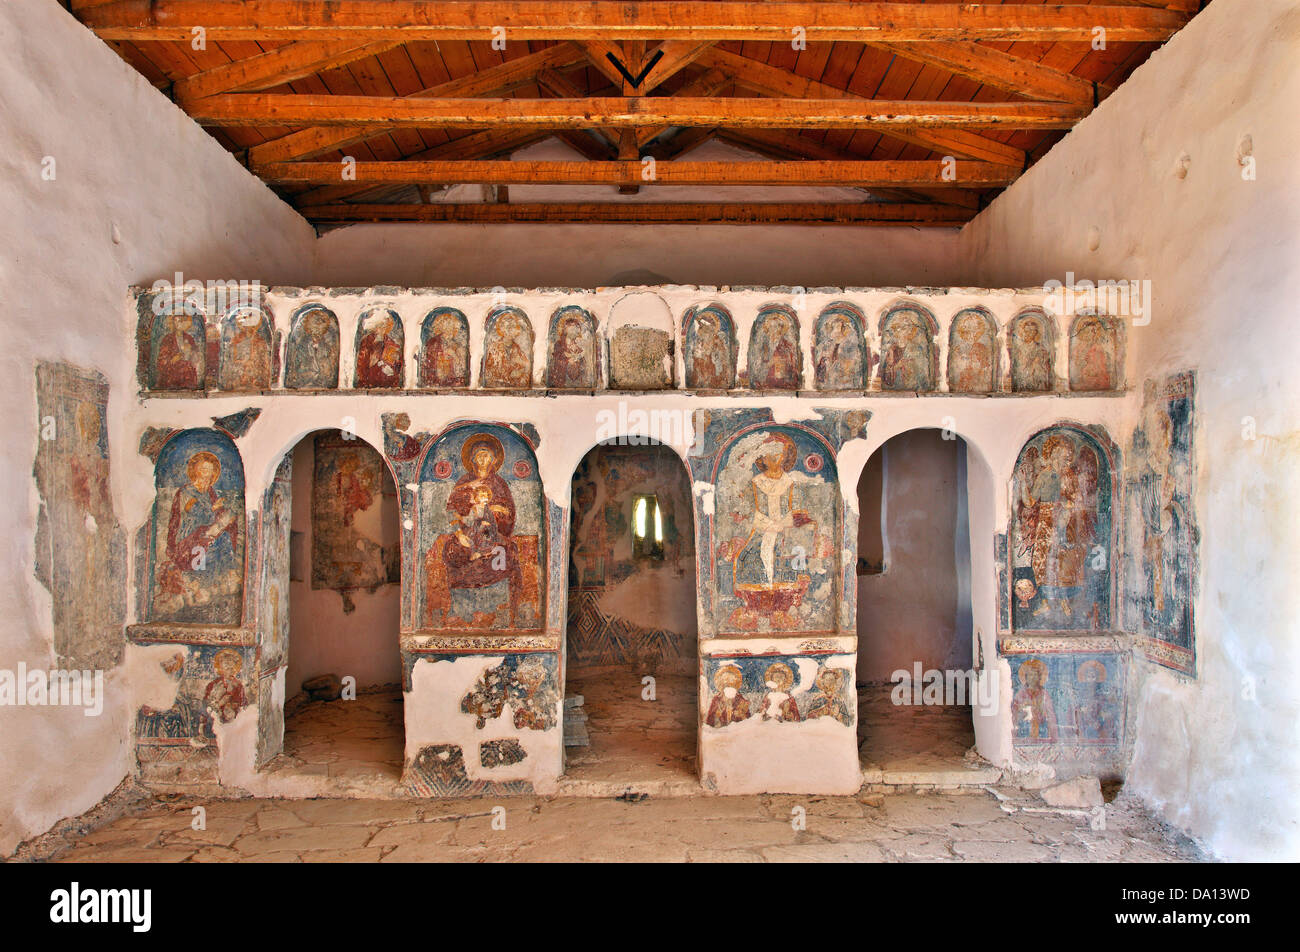 L'iconostase de l'église Agios Ioannis Theologos, Perachori, Ithaca, île de la mer Ionienne, l'Eptanisa (même "îles"), Grèce Banque D'Images